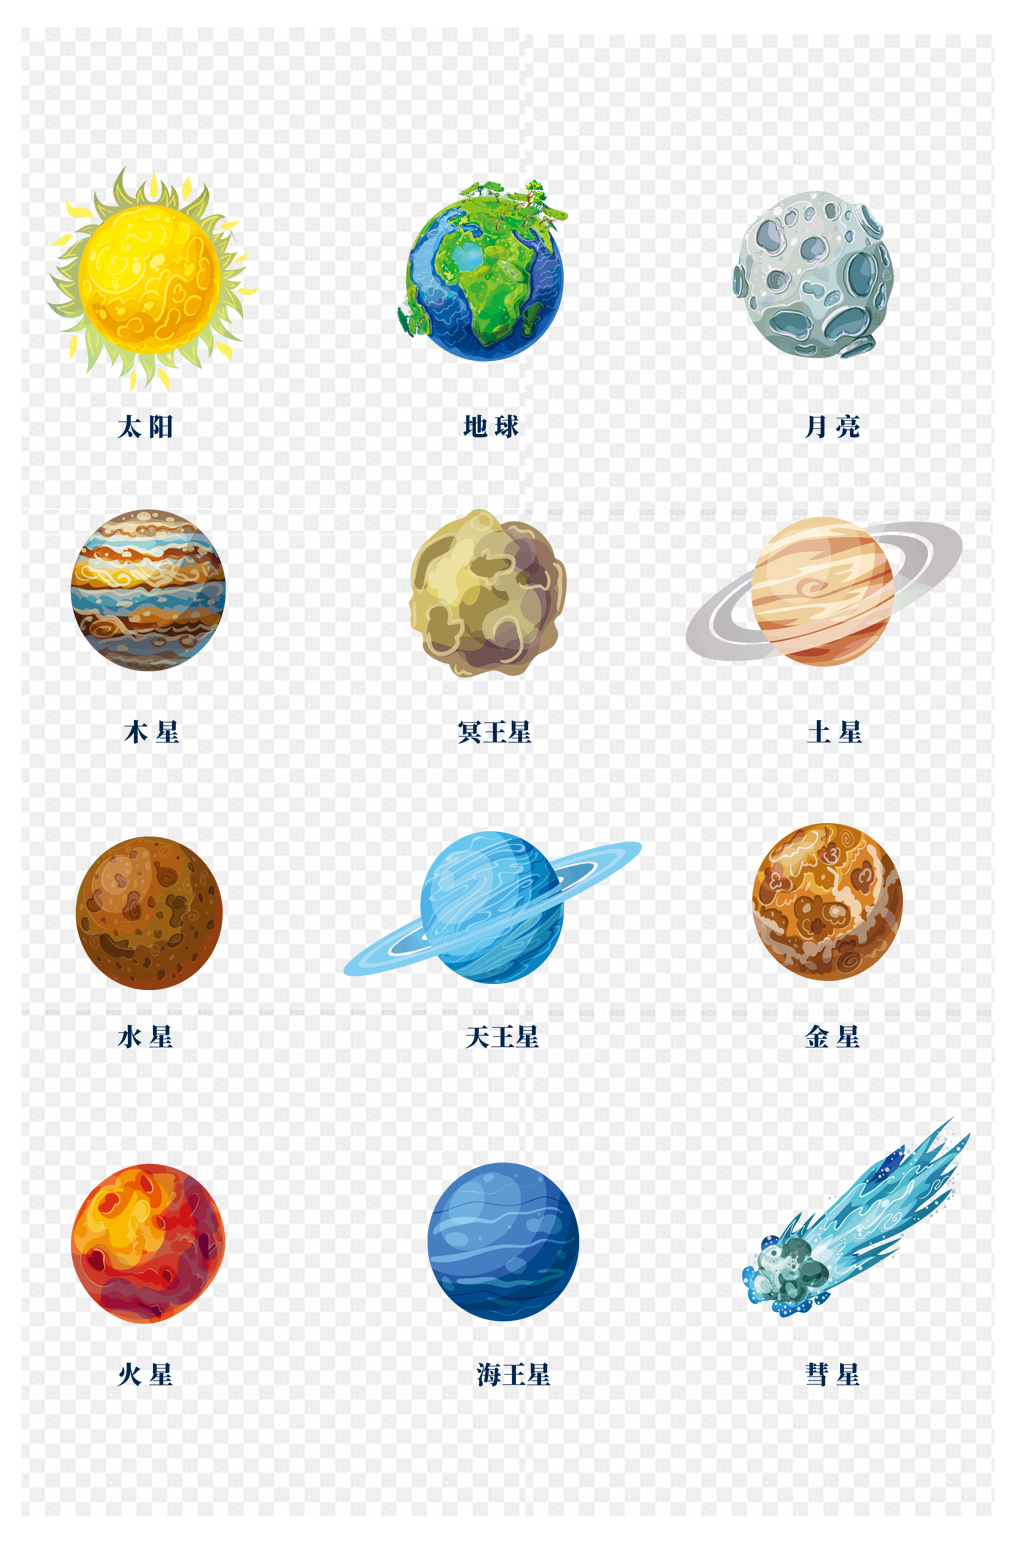 九大行星各自颜色图片